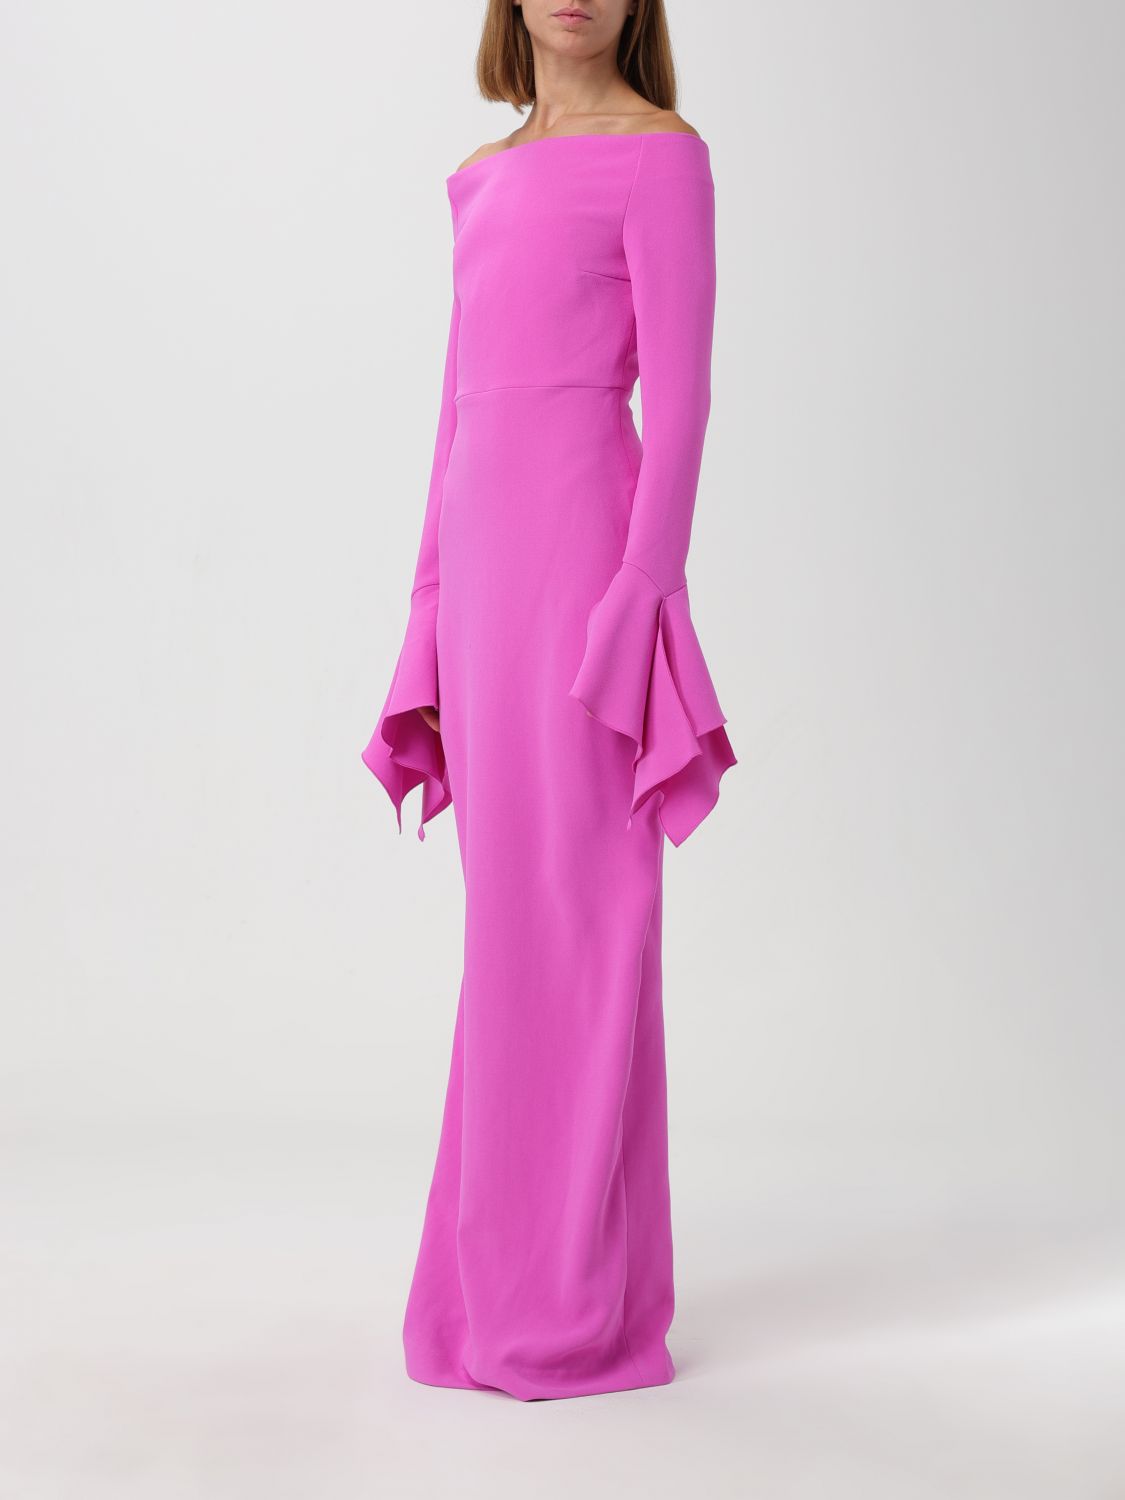 Solace London Dress Woman Pink Woman